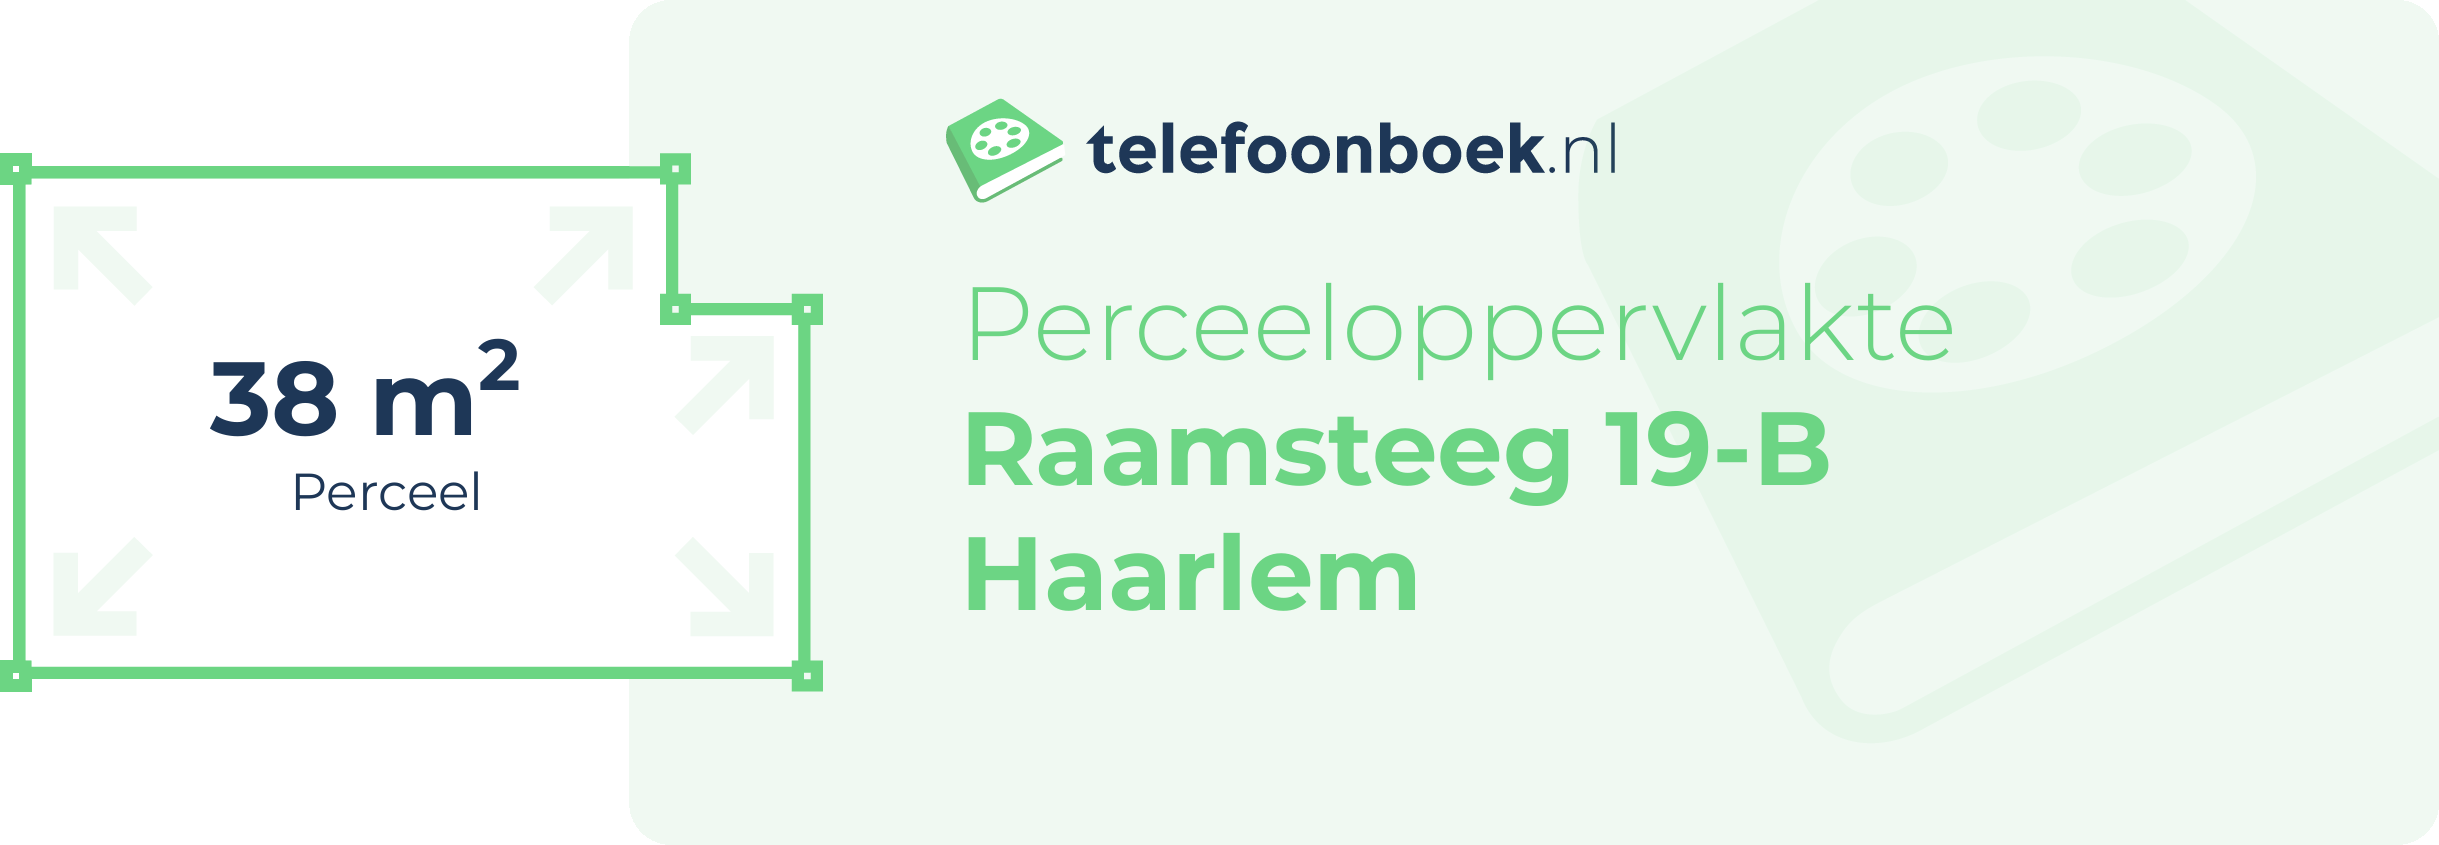 Perceeloppervlakte Raamsteeg 19-B Haarlem